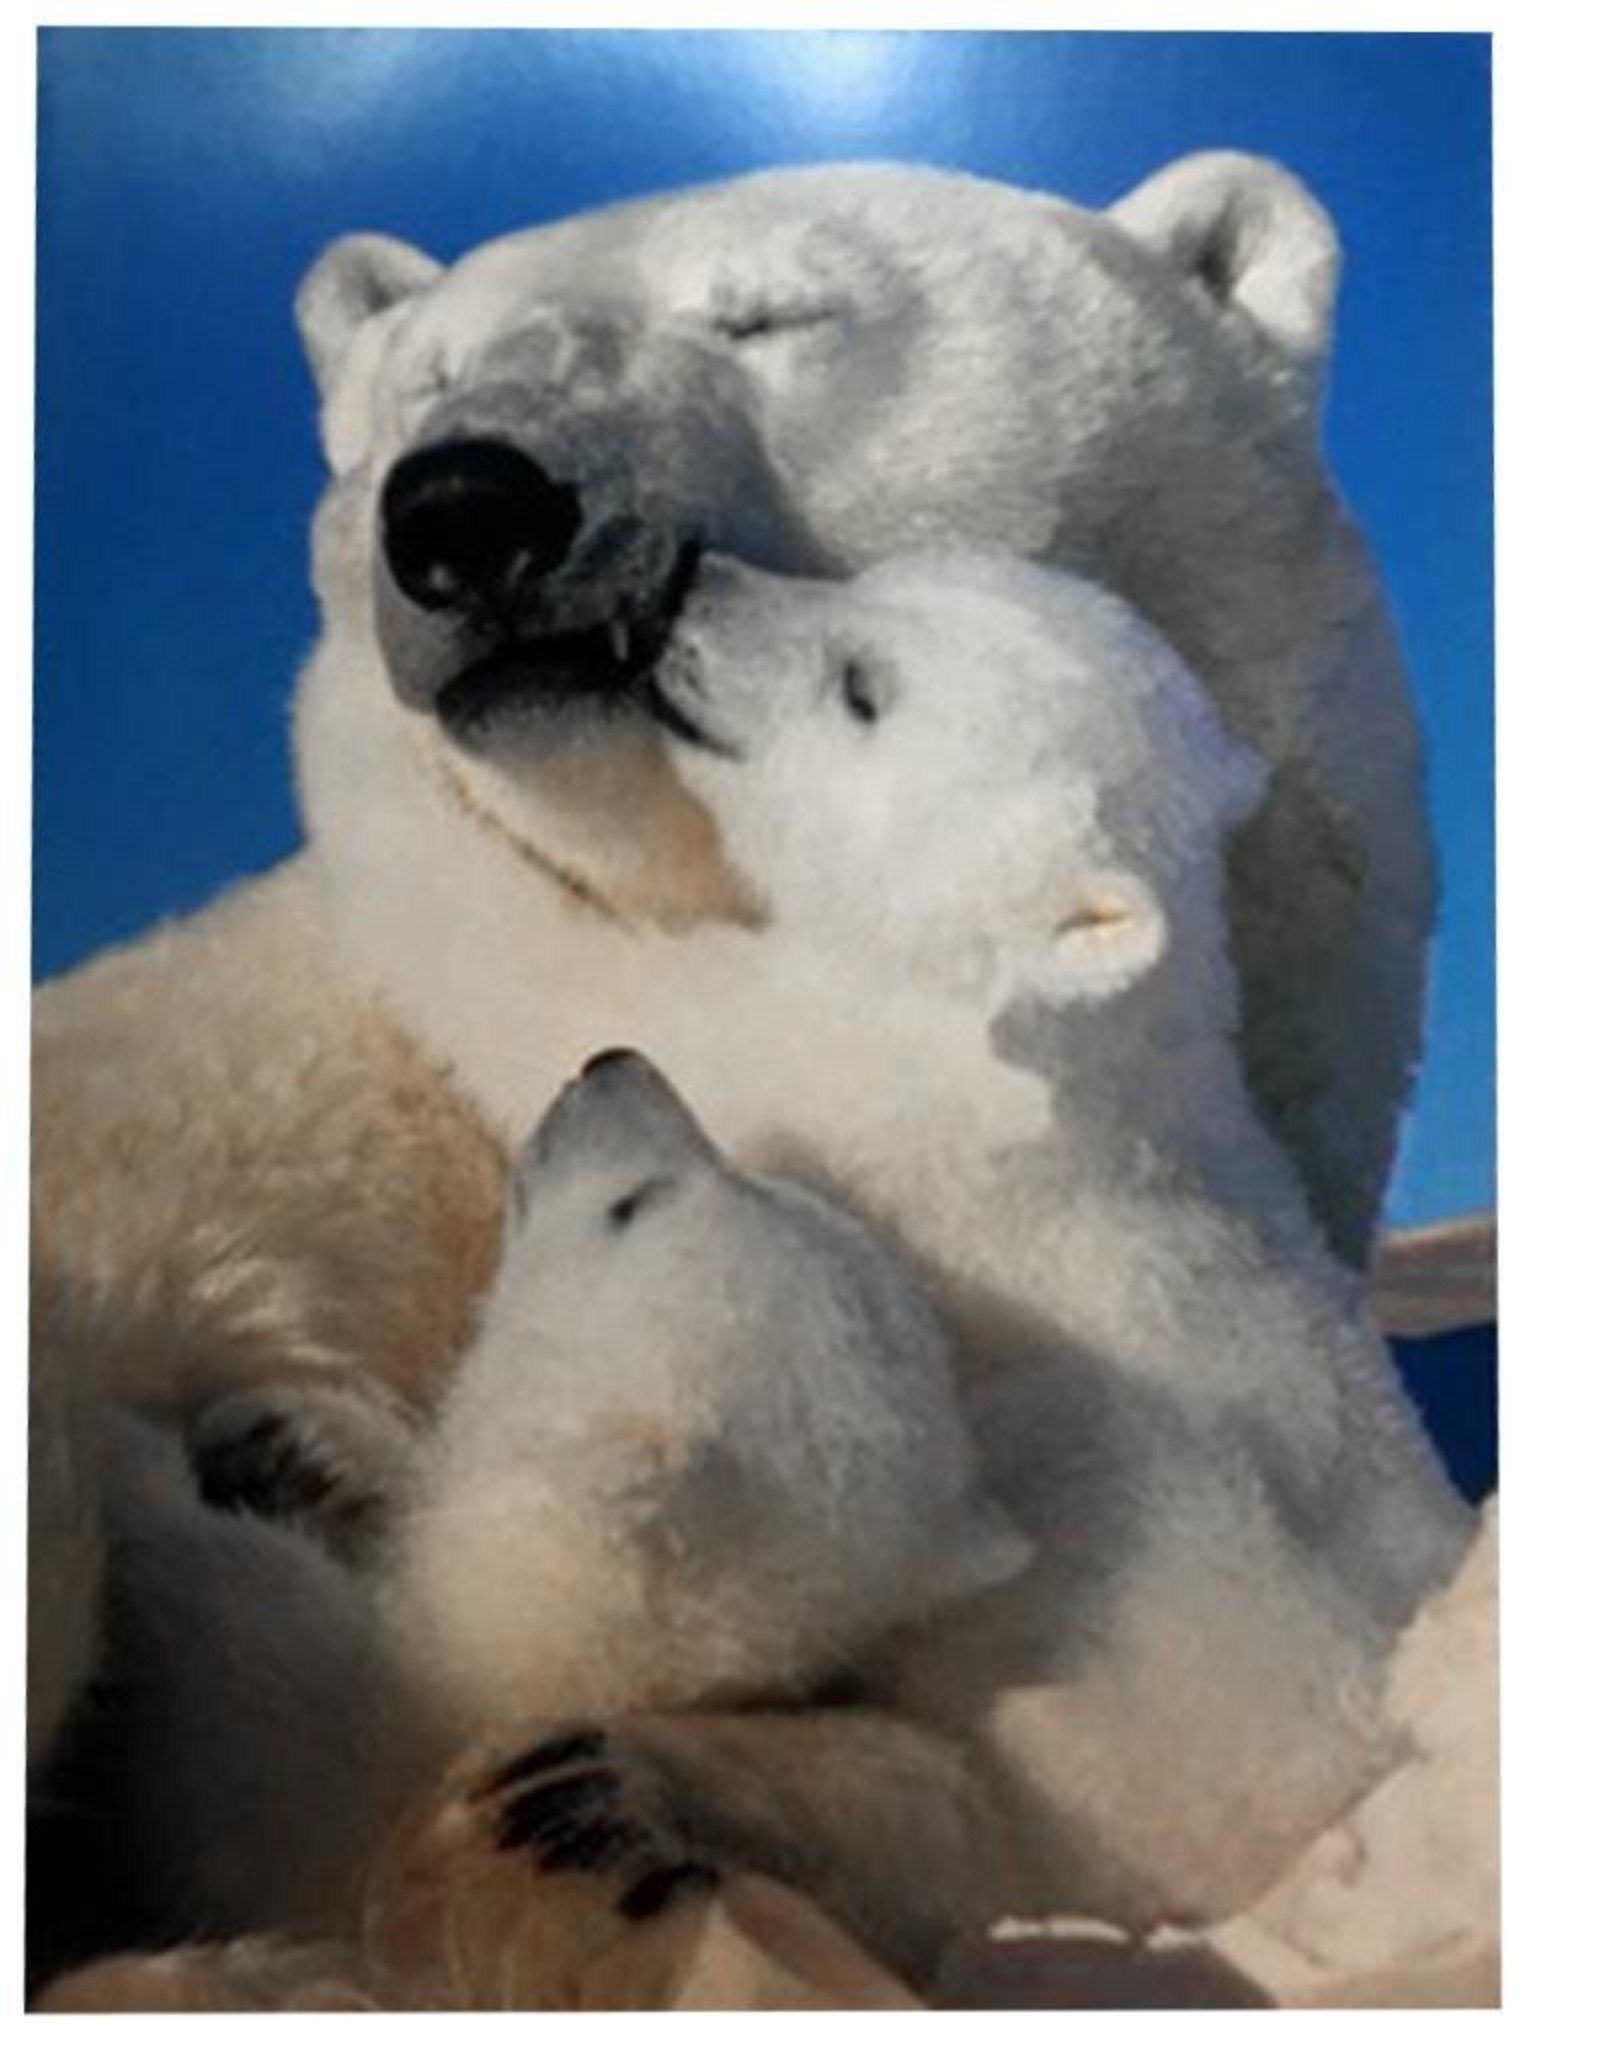 Mothers Day Card Polar Bears